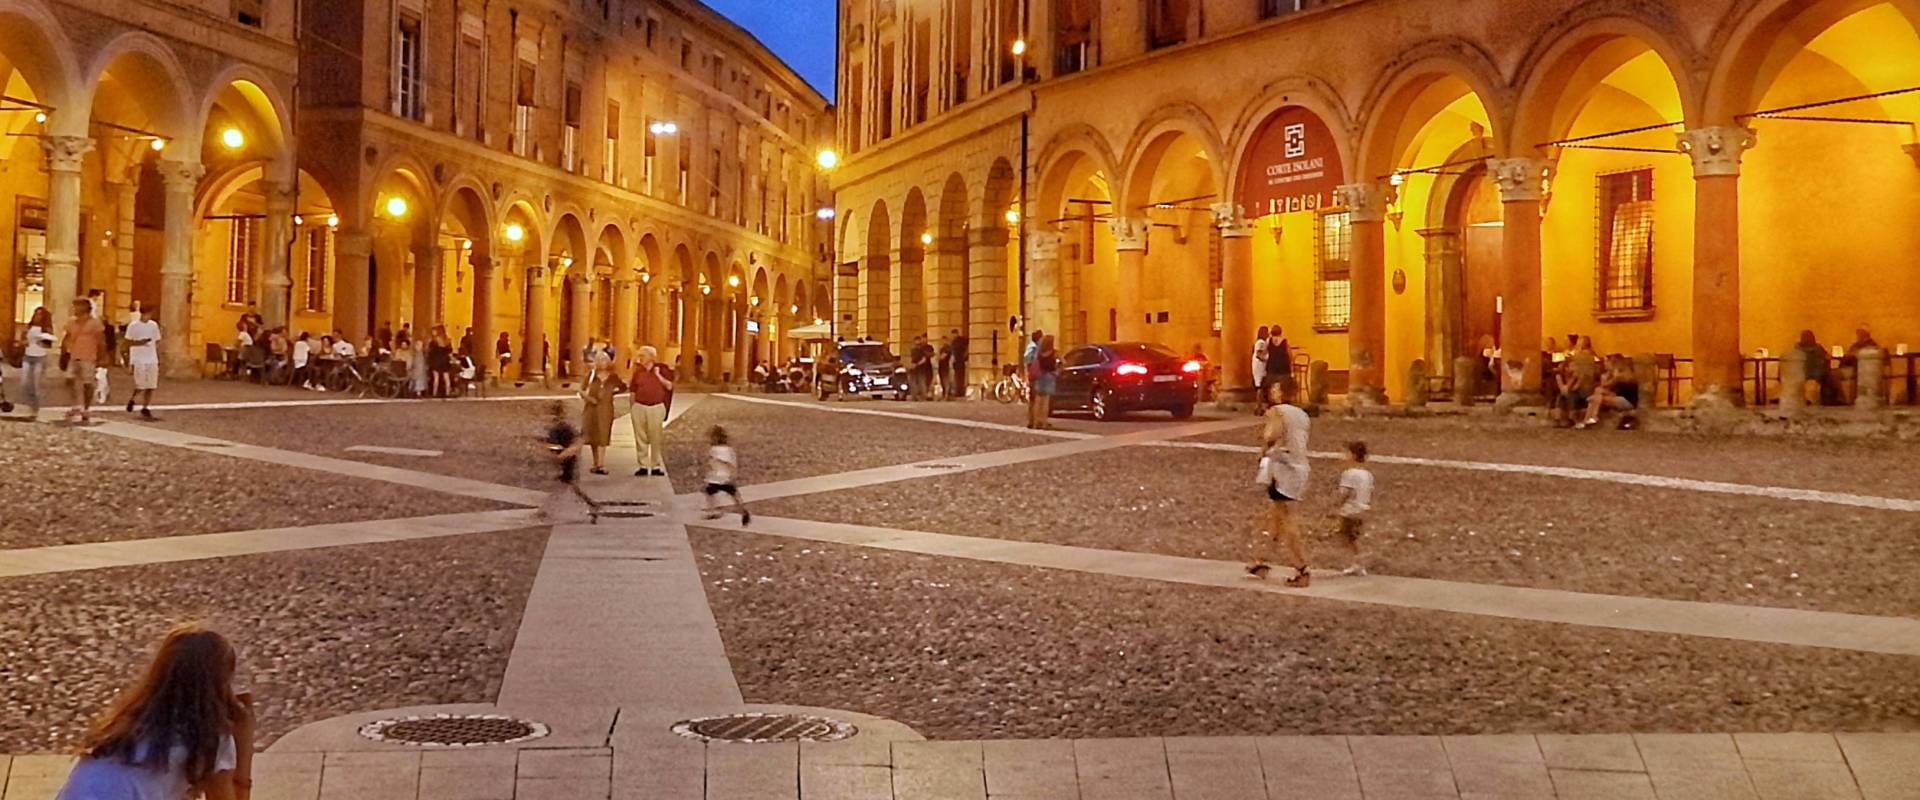 Piazza Santo Stefano. Bologna photo by Maretta Angelini